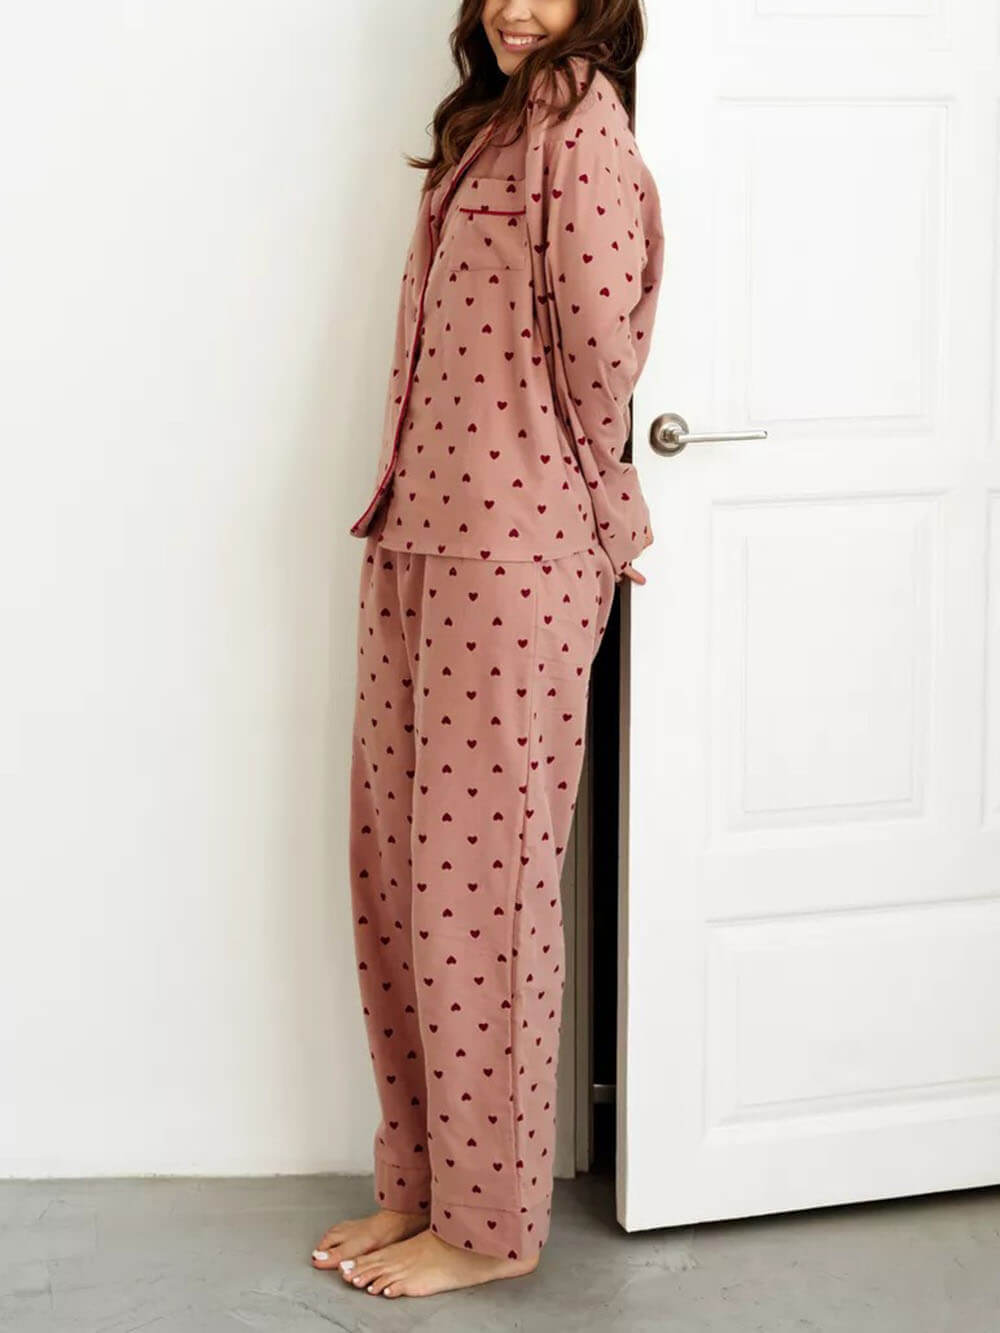 Französisches Pyjama-Set mit Herzmuster und Revers